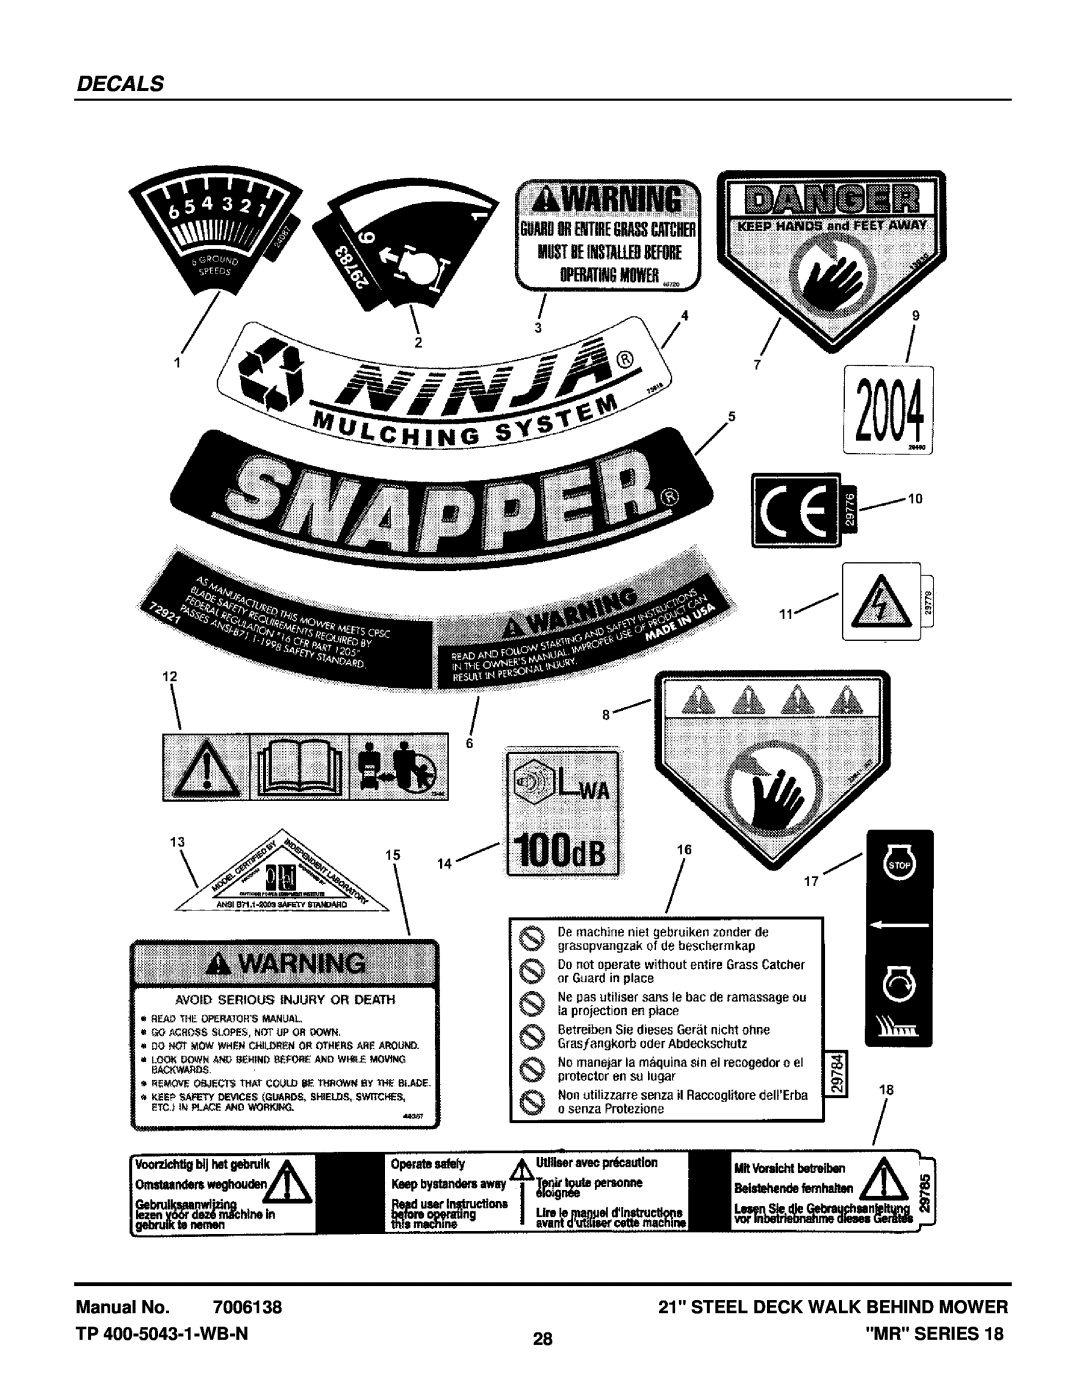 Snapper MRP216518B, MR216518B manual Decals, Manual No, 7006138, Steel Deck Walk Behind Mower, TP 400-5043-1-WB-N, Mr Series 